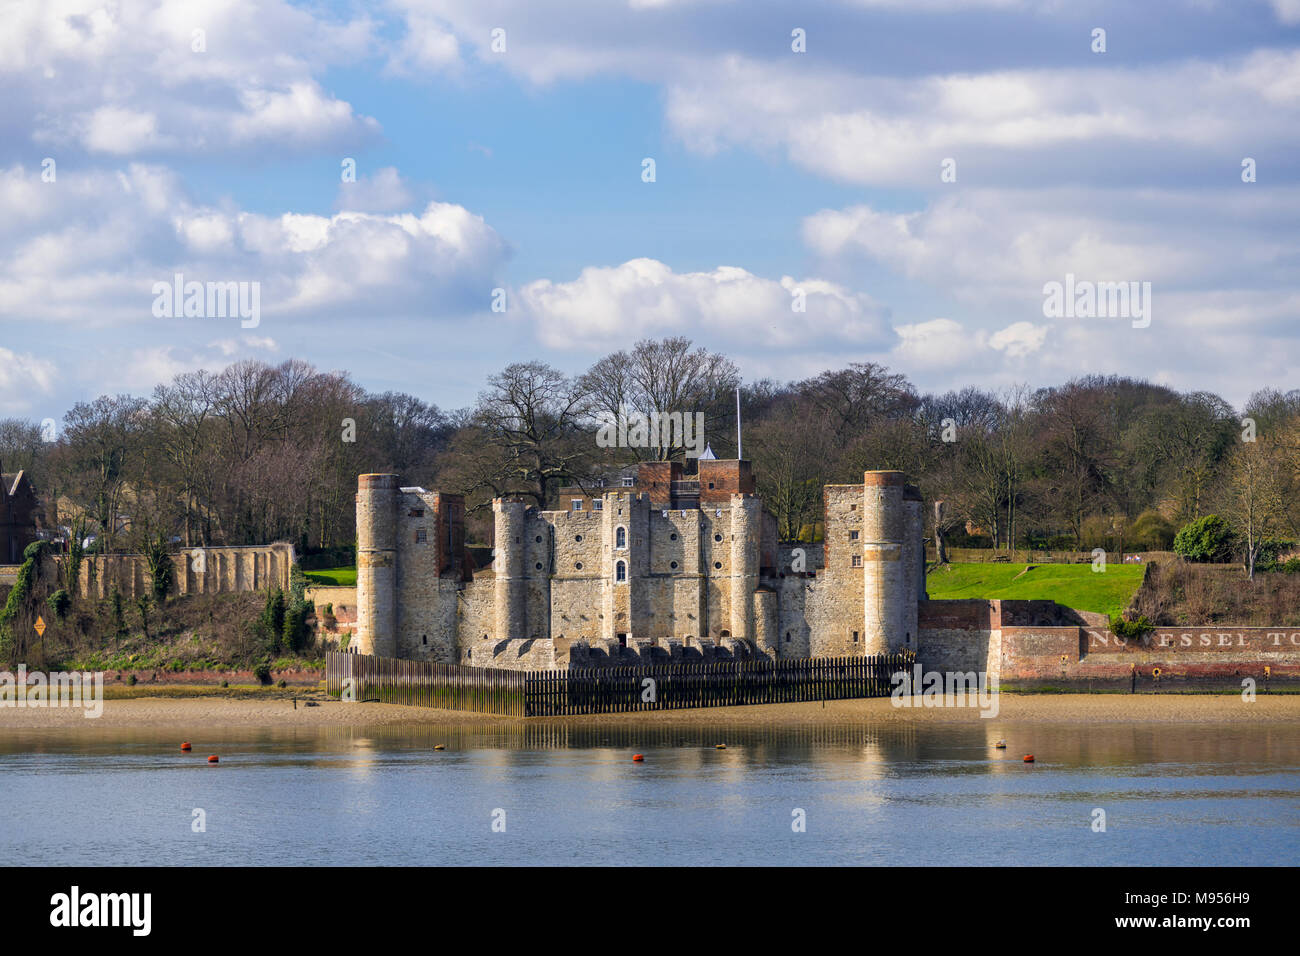 Upnor castillo, una fortificación del siglo XVI situada en el río Medway en Chatham Kent Foto de stock